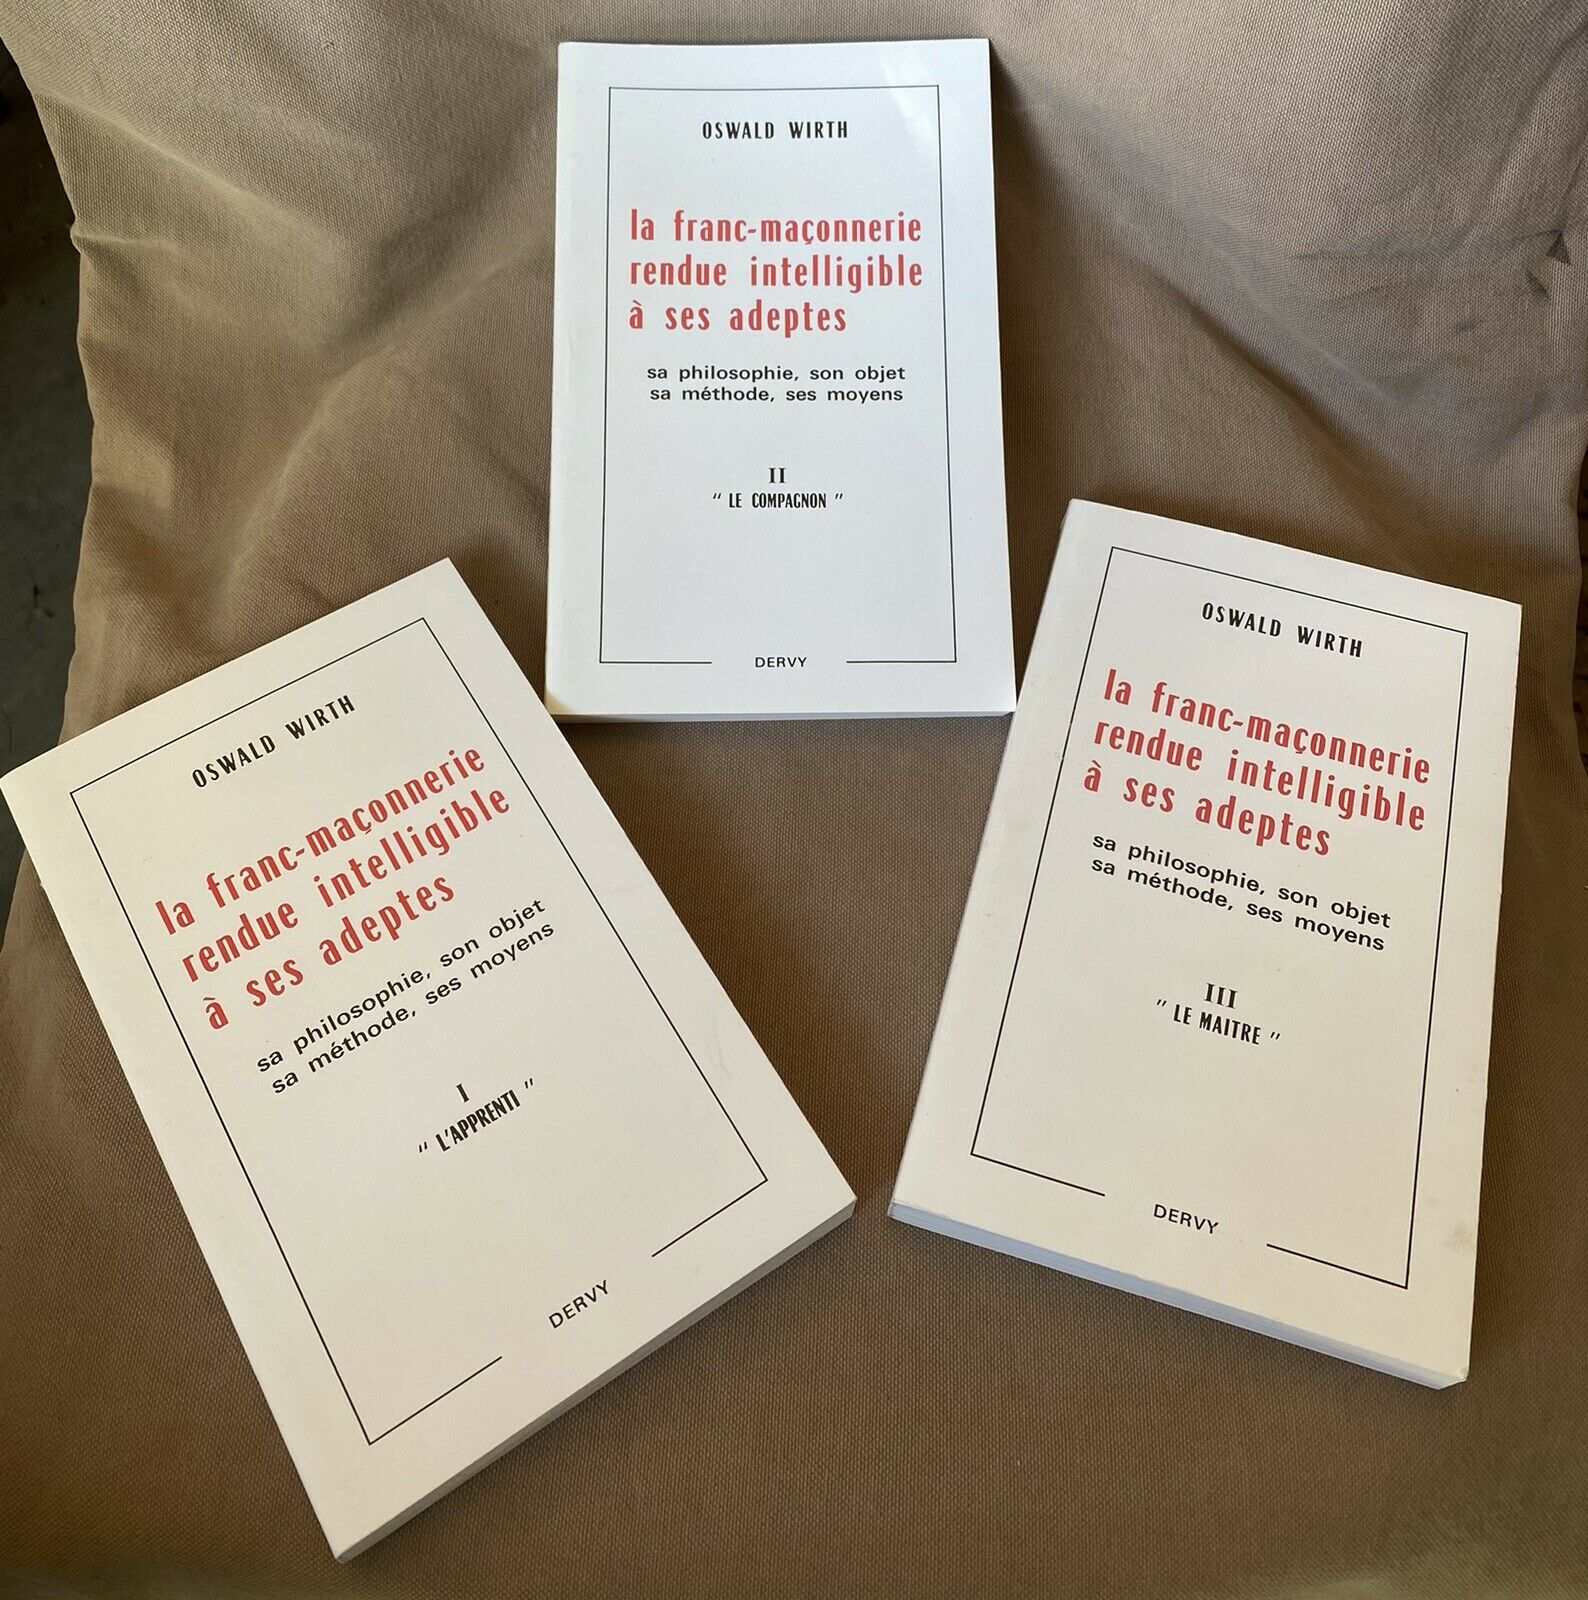 Featured image for “La franc-maçonnerie rendue intelligible à ses adeptes / Coffret 3 volumes”